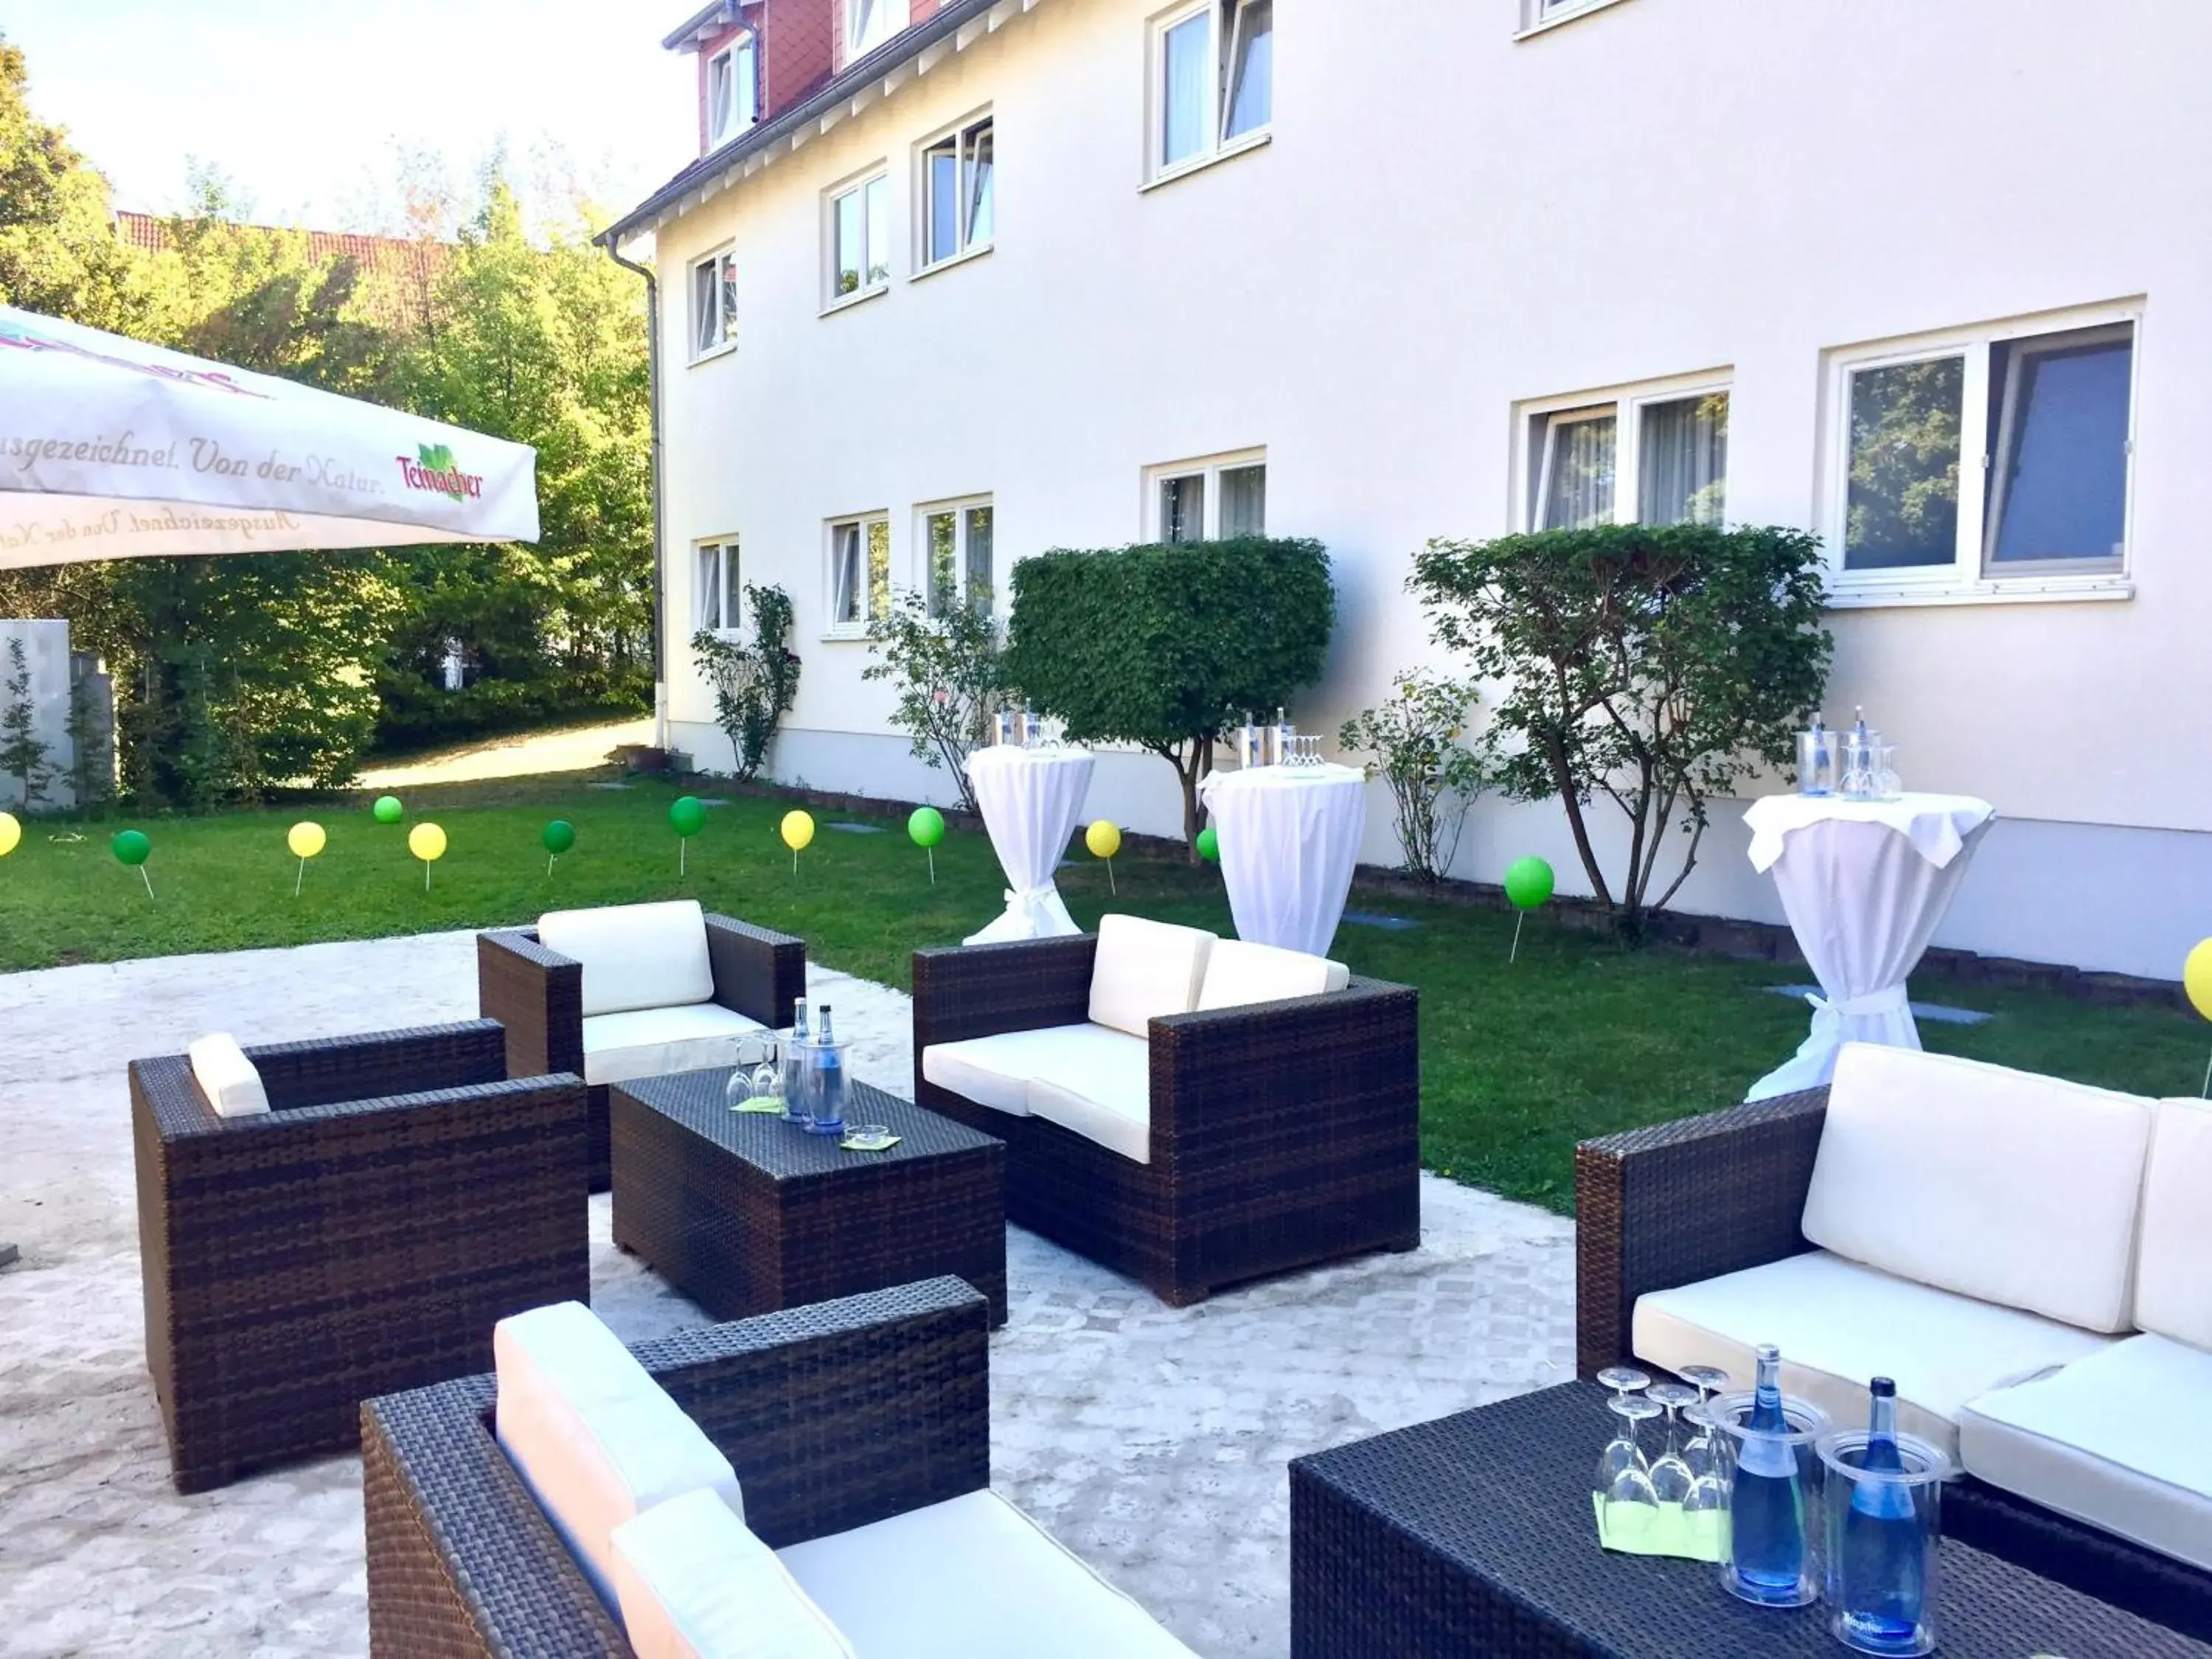 Garden, Patio/Outdoor Area in Hotel Ambiente Walldorf